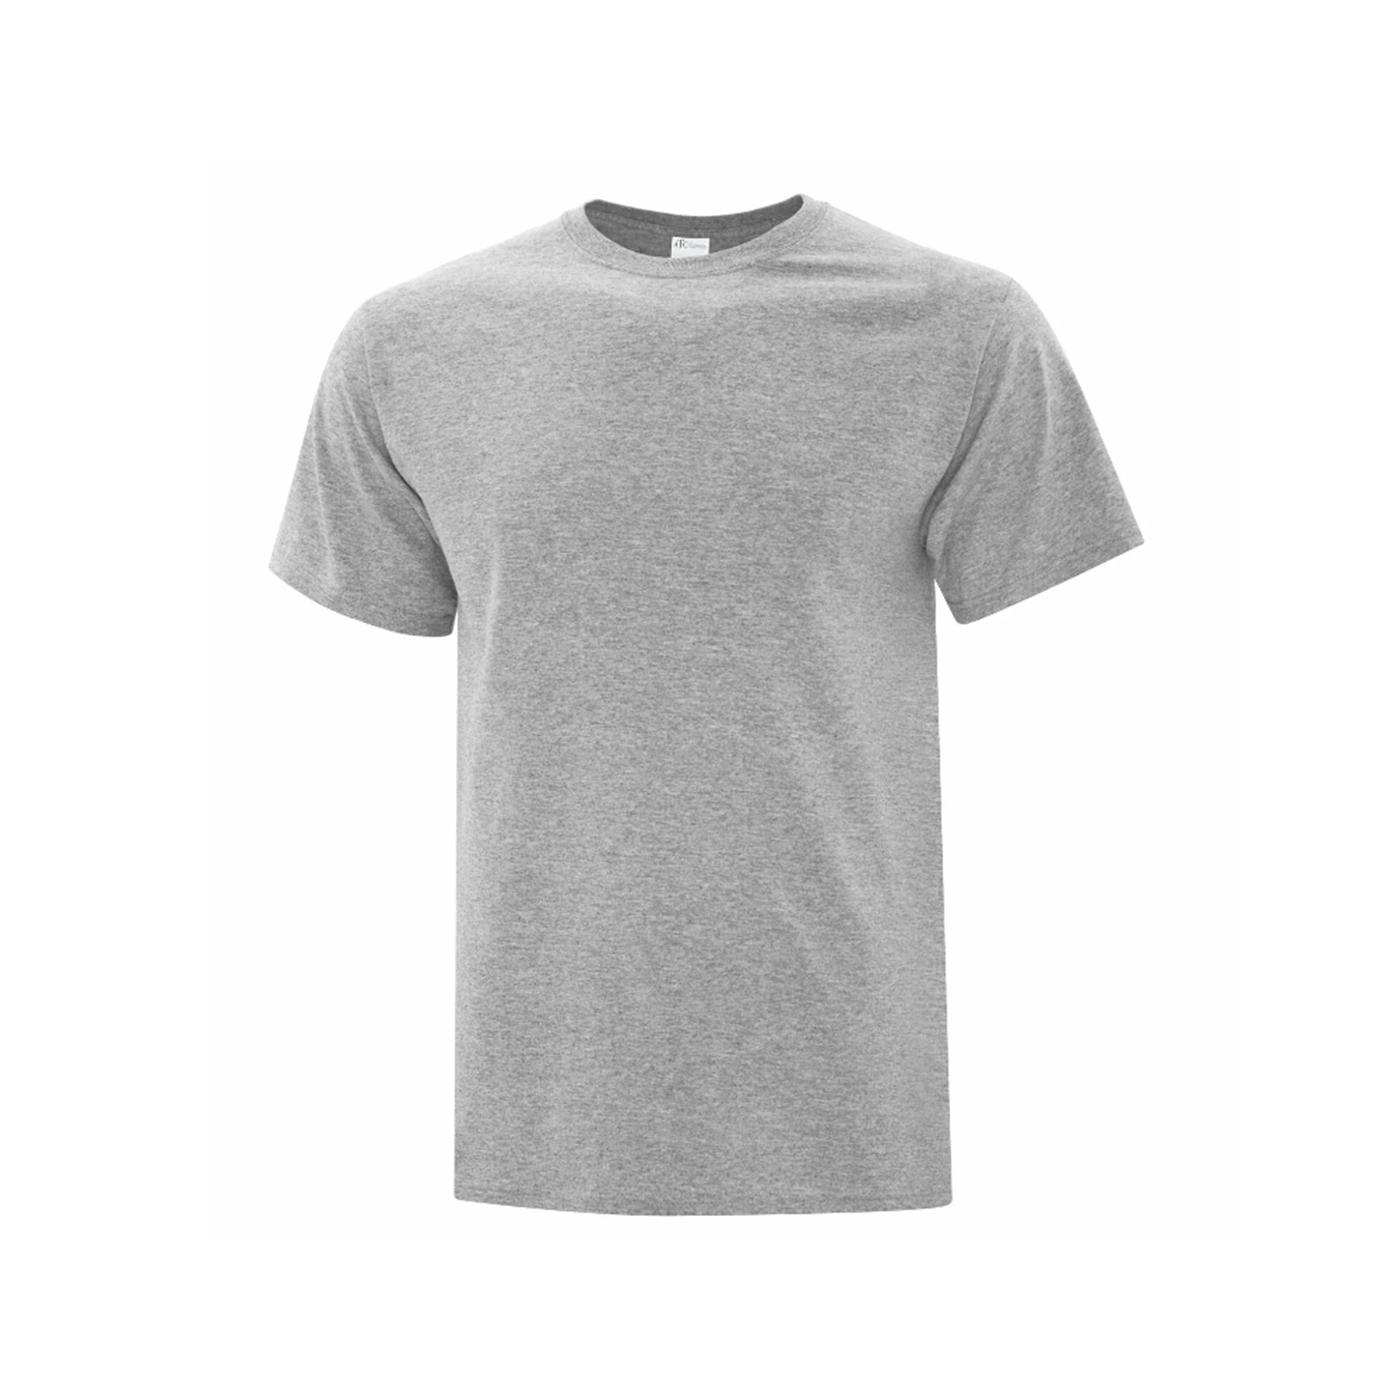 Youth Dri-Power T-Shirt - Athletic Grey